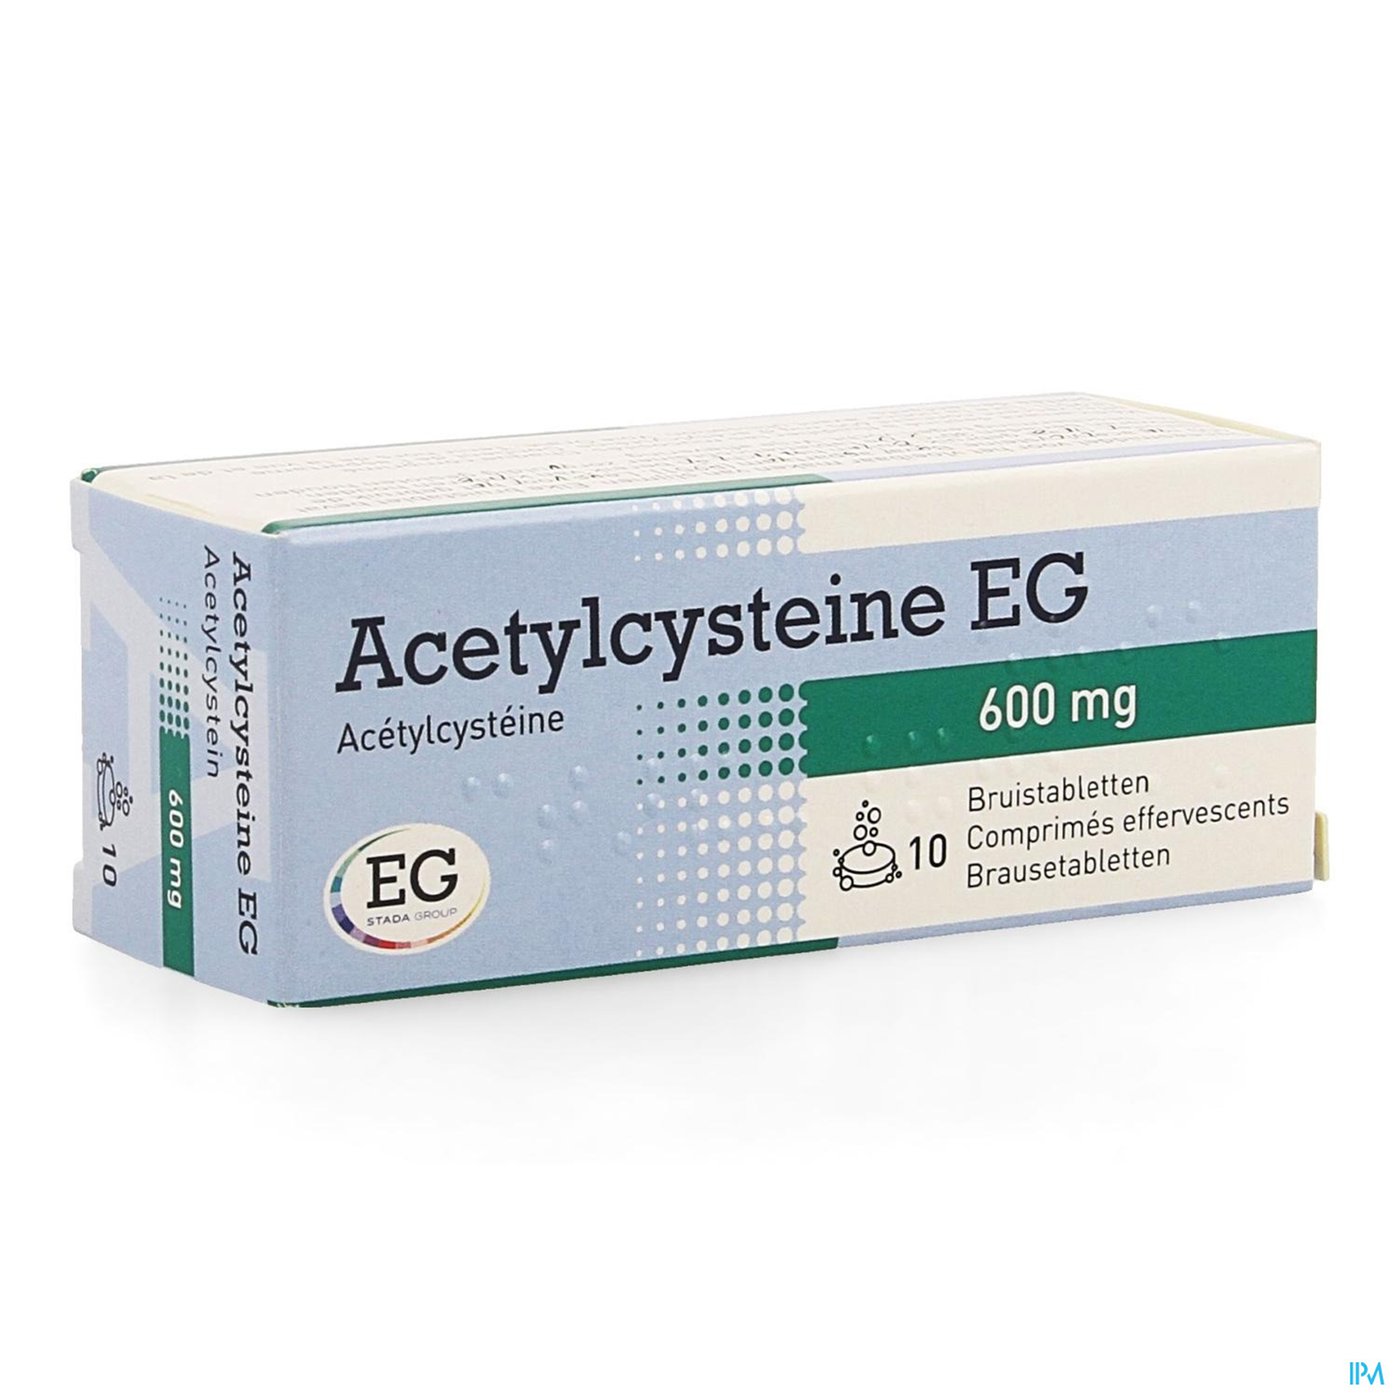 Acetylcysteine EG 600Mg Bruistabl 10X600Mg packshot